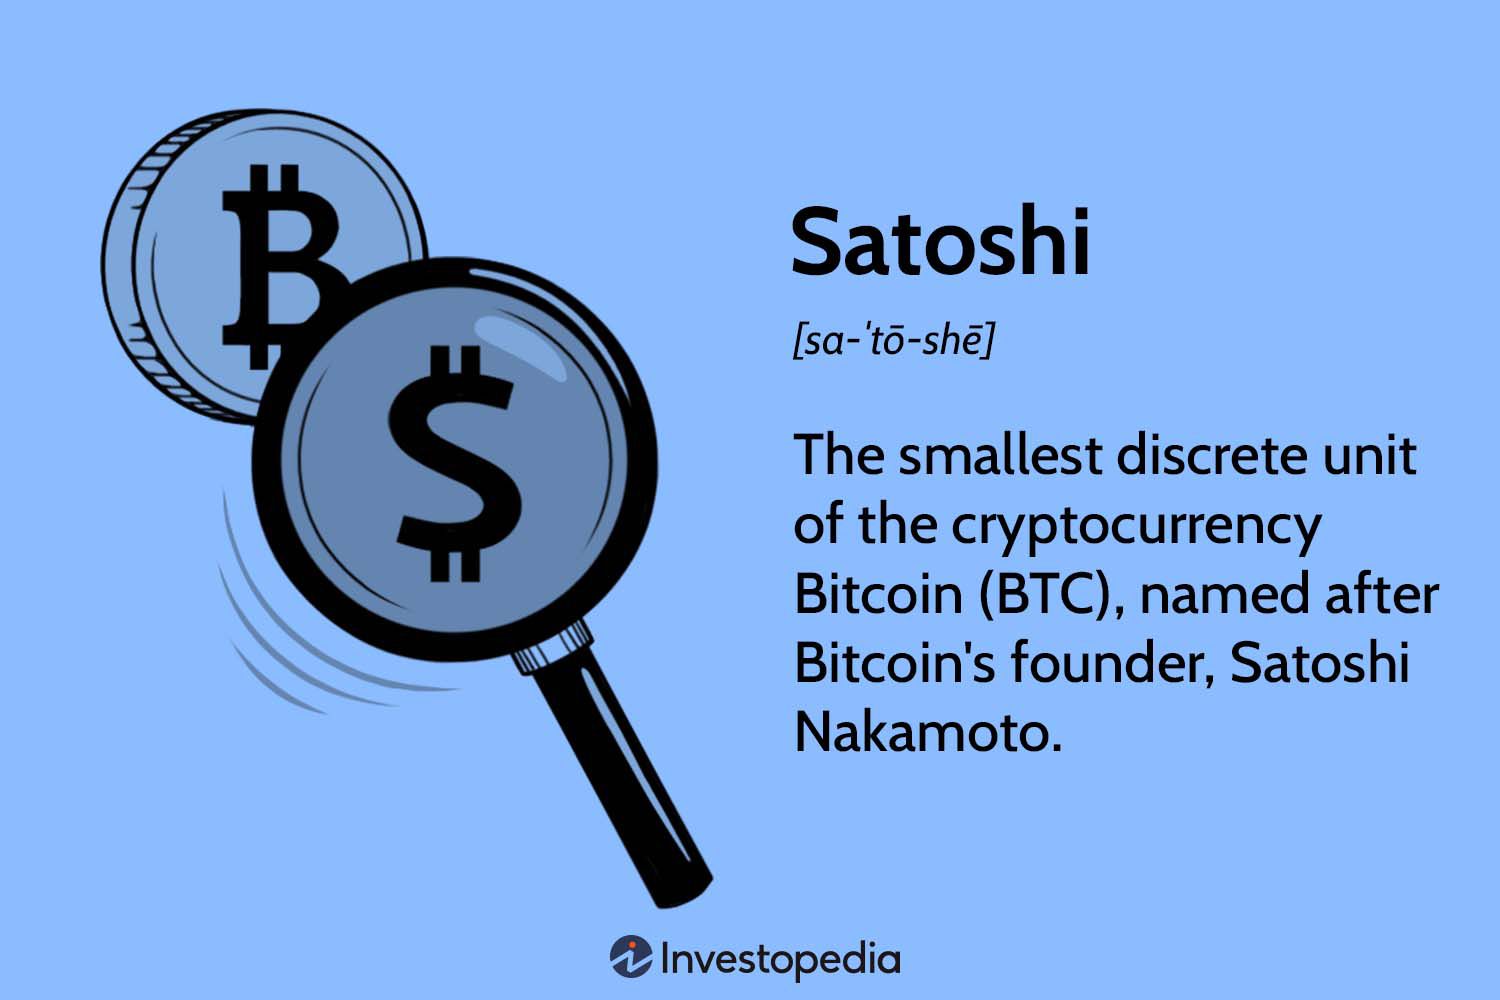 Satoshi Converter/Calculator - Convert BTC or Satoshi to USD, EUR, AUD